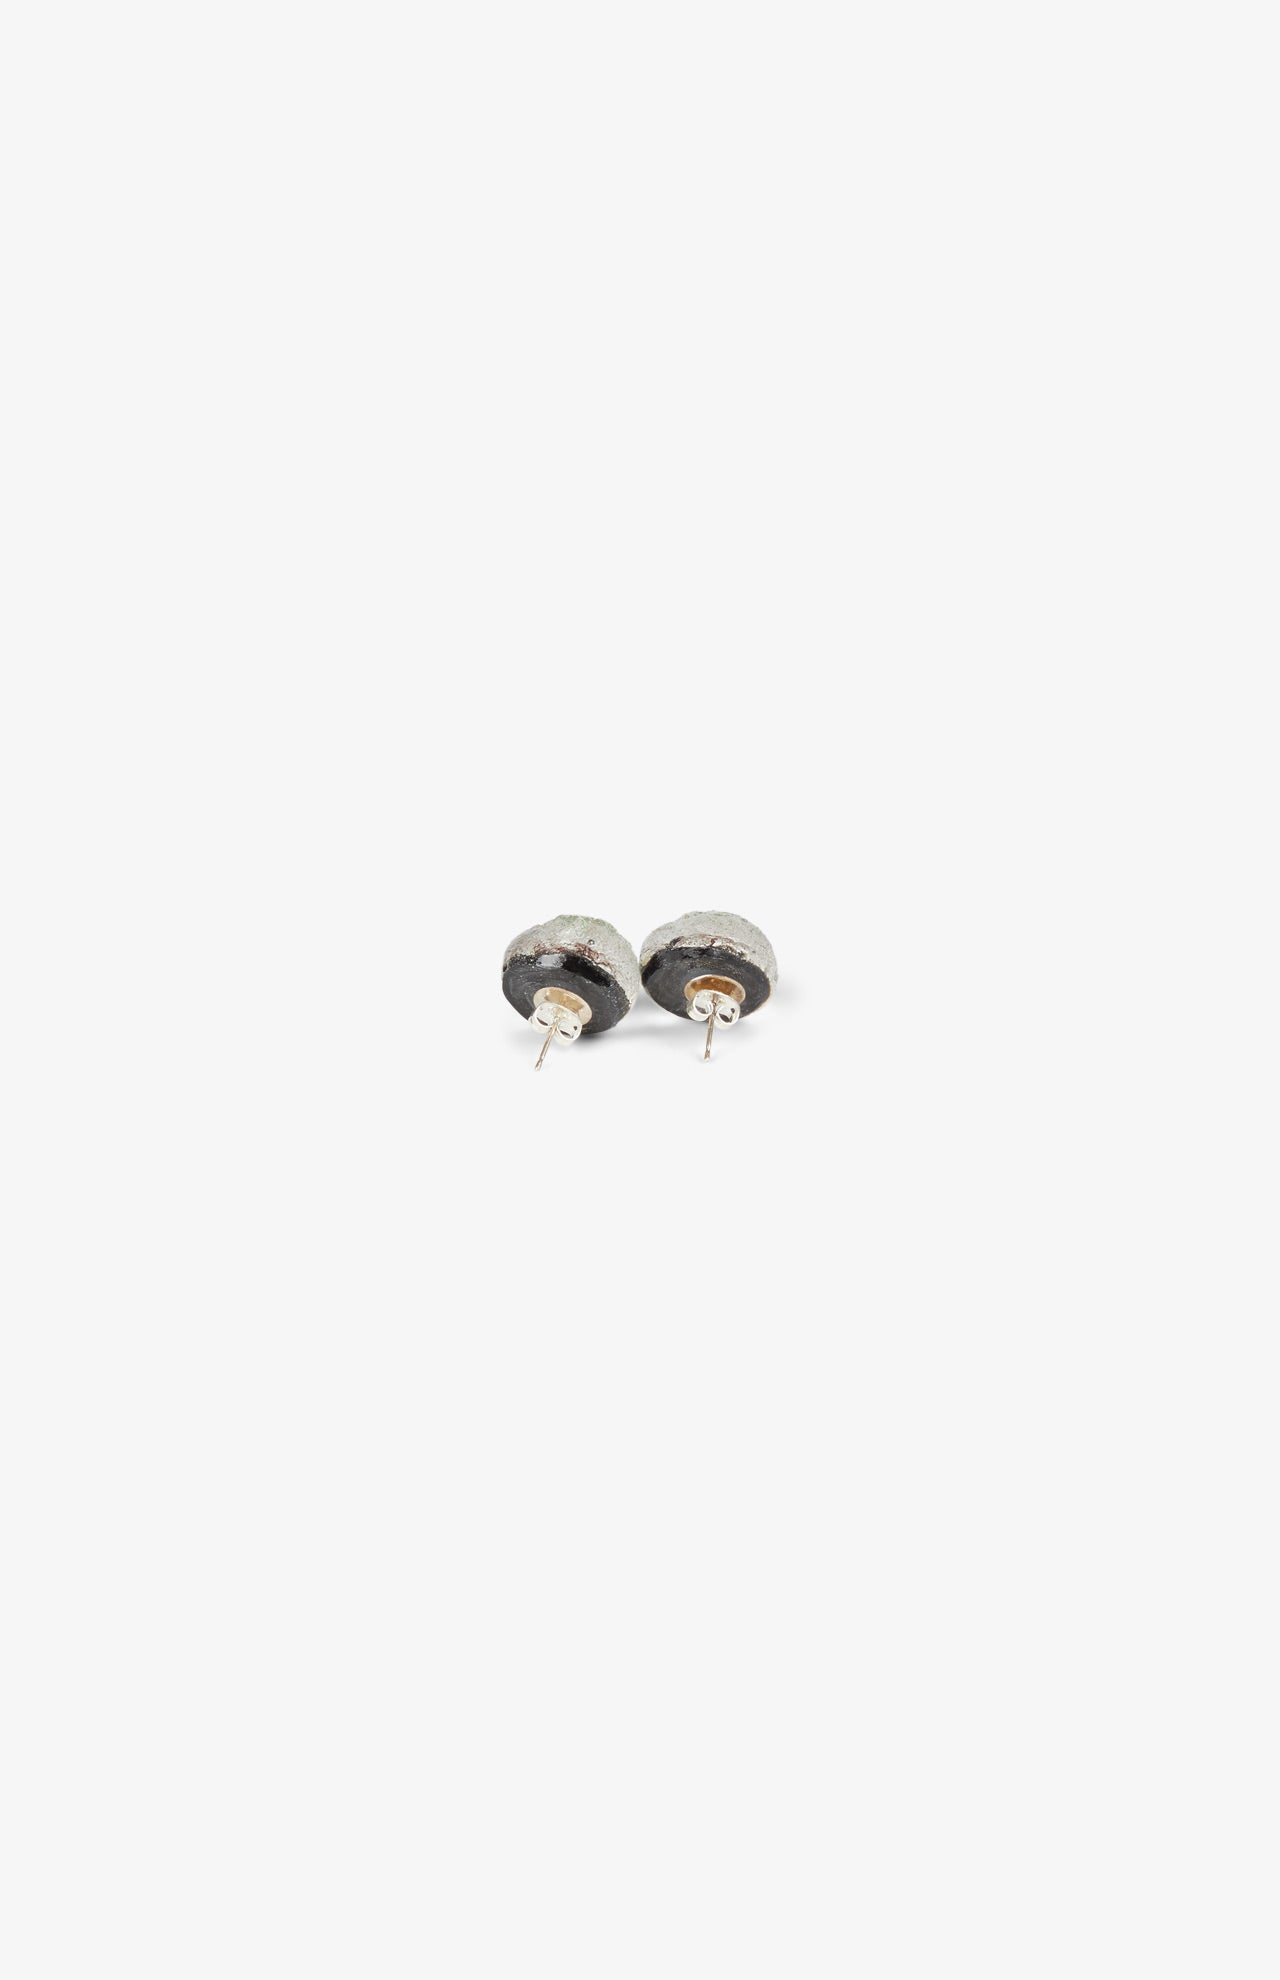 Boucles d'oreilles Simple Météorite - Reflets Noirs Morodorés - Fermoir Argent